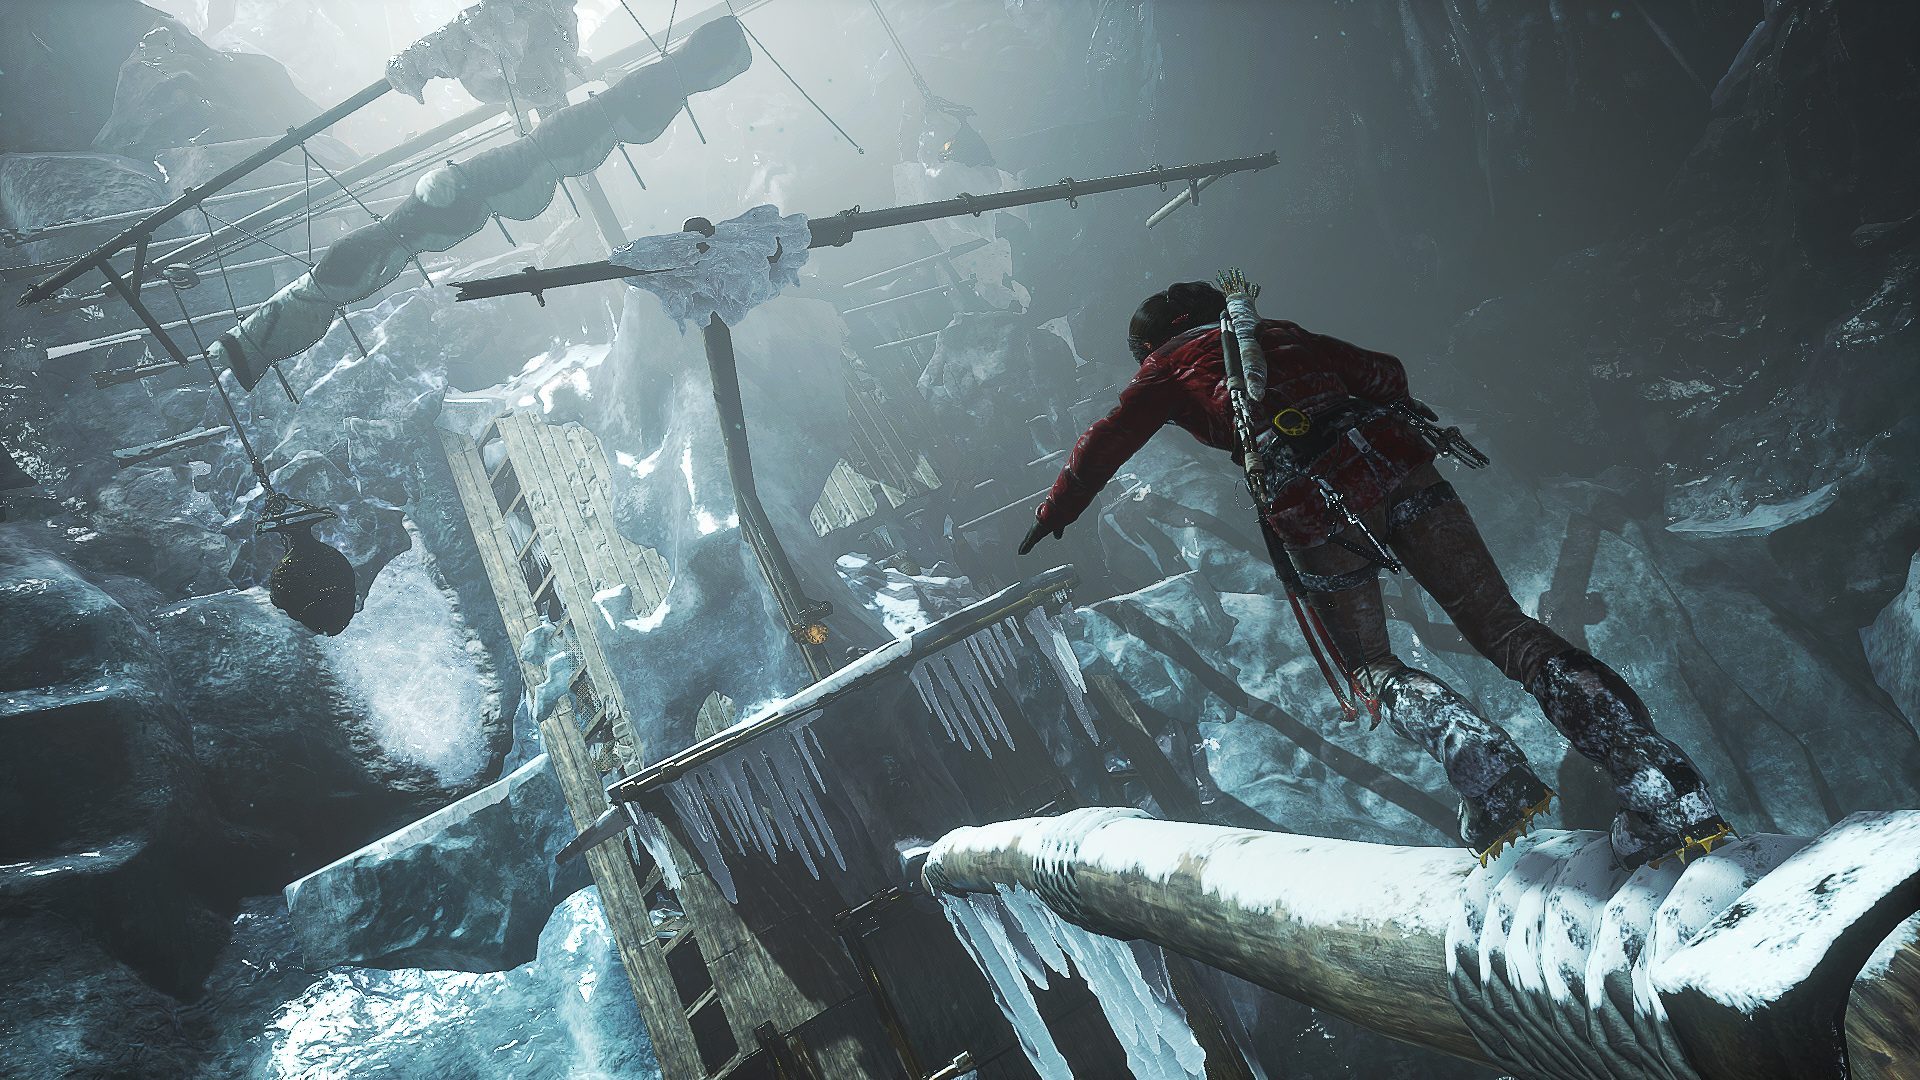 En av de kryptorna Lara besöker innehåller ett istäckt skepp som hänger ned längsmed en bergvägg. Lara tvingas försöka finna ett sätt att ta sig upp för den om hon vill ha skatten i toppen.